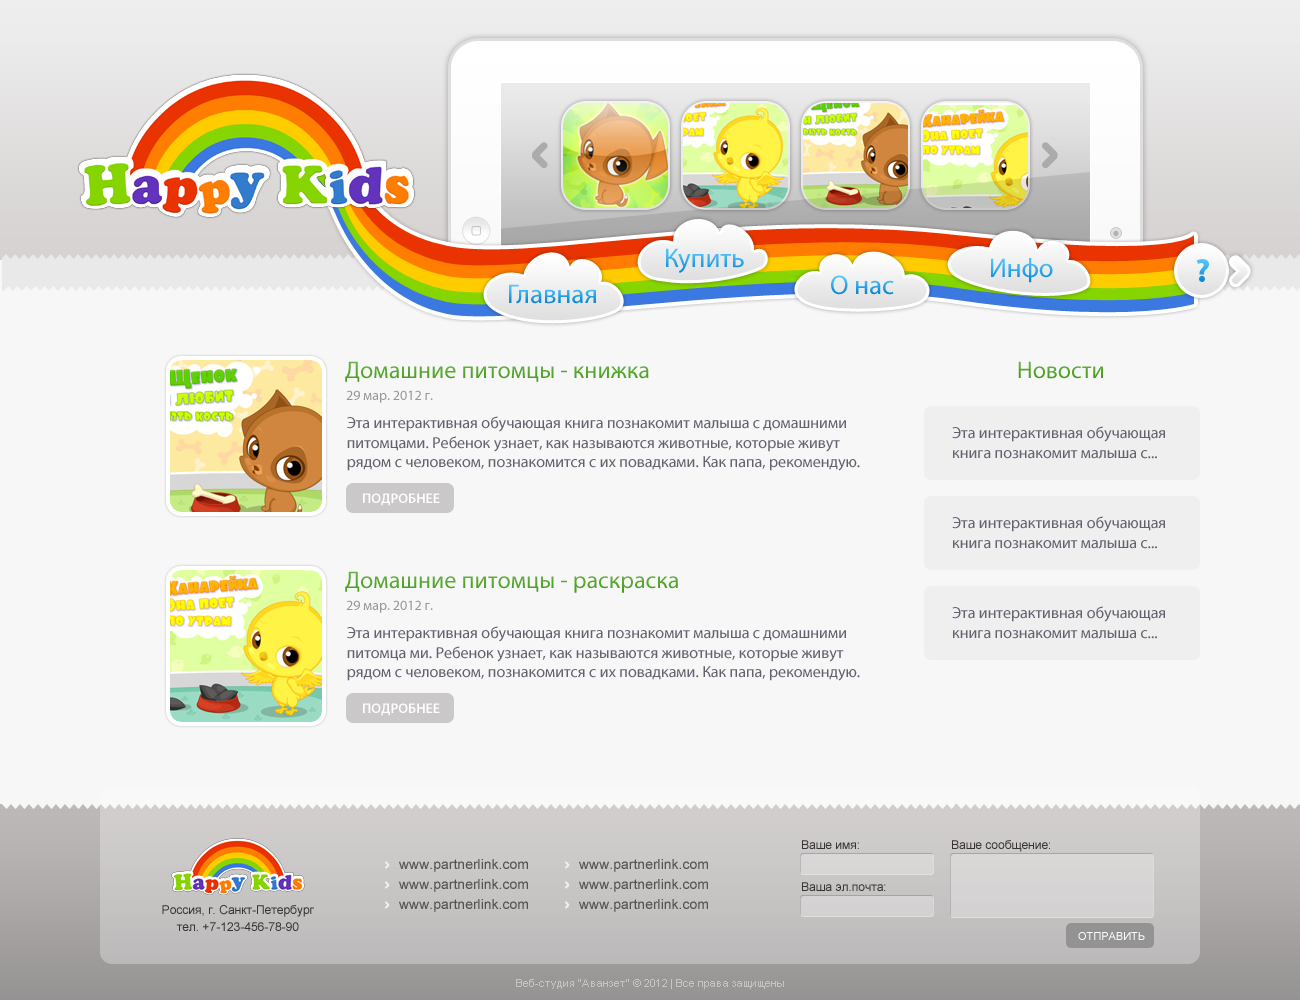 Дизайн приложения для мобильных устройств Happy Kids г. Москва